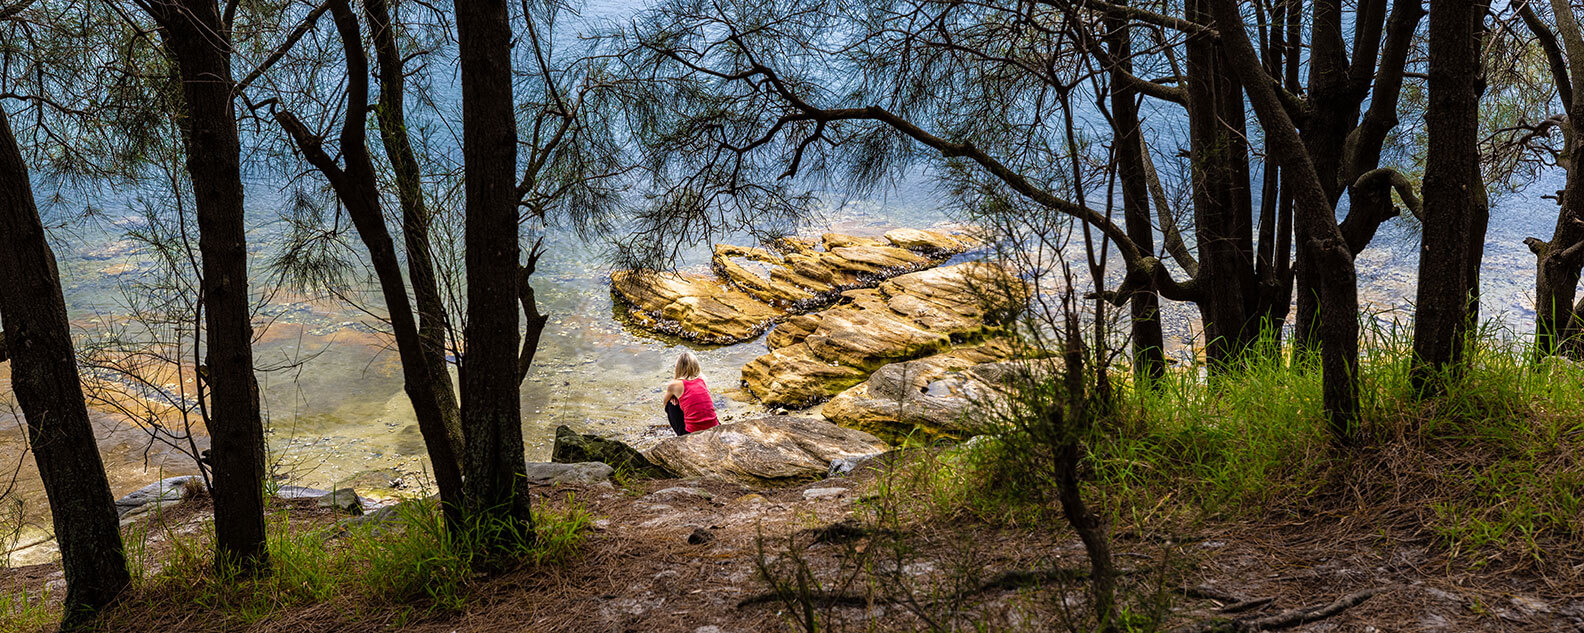 Woman sitting on rocks beside lake in park